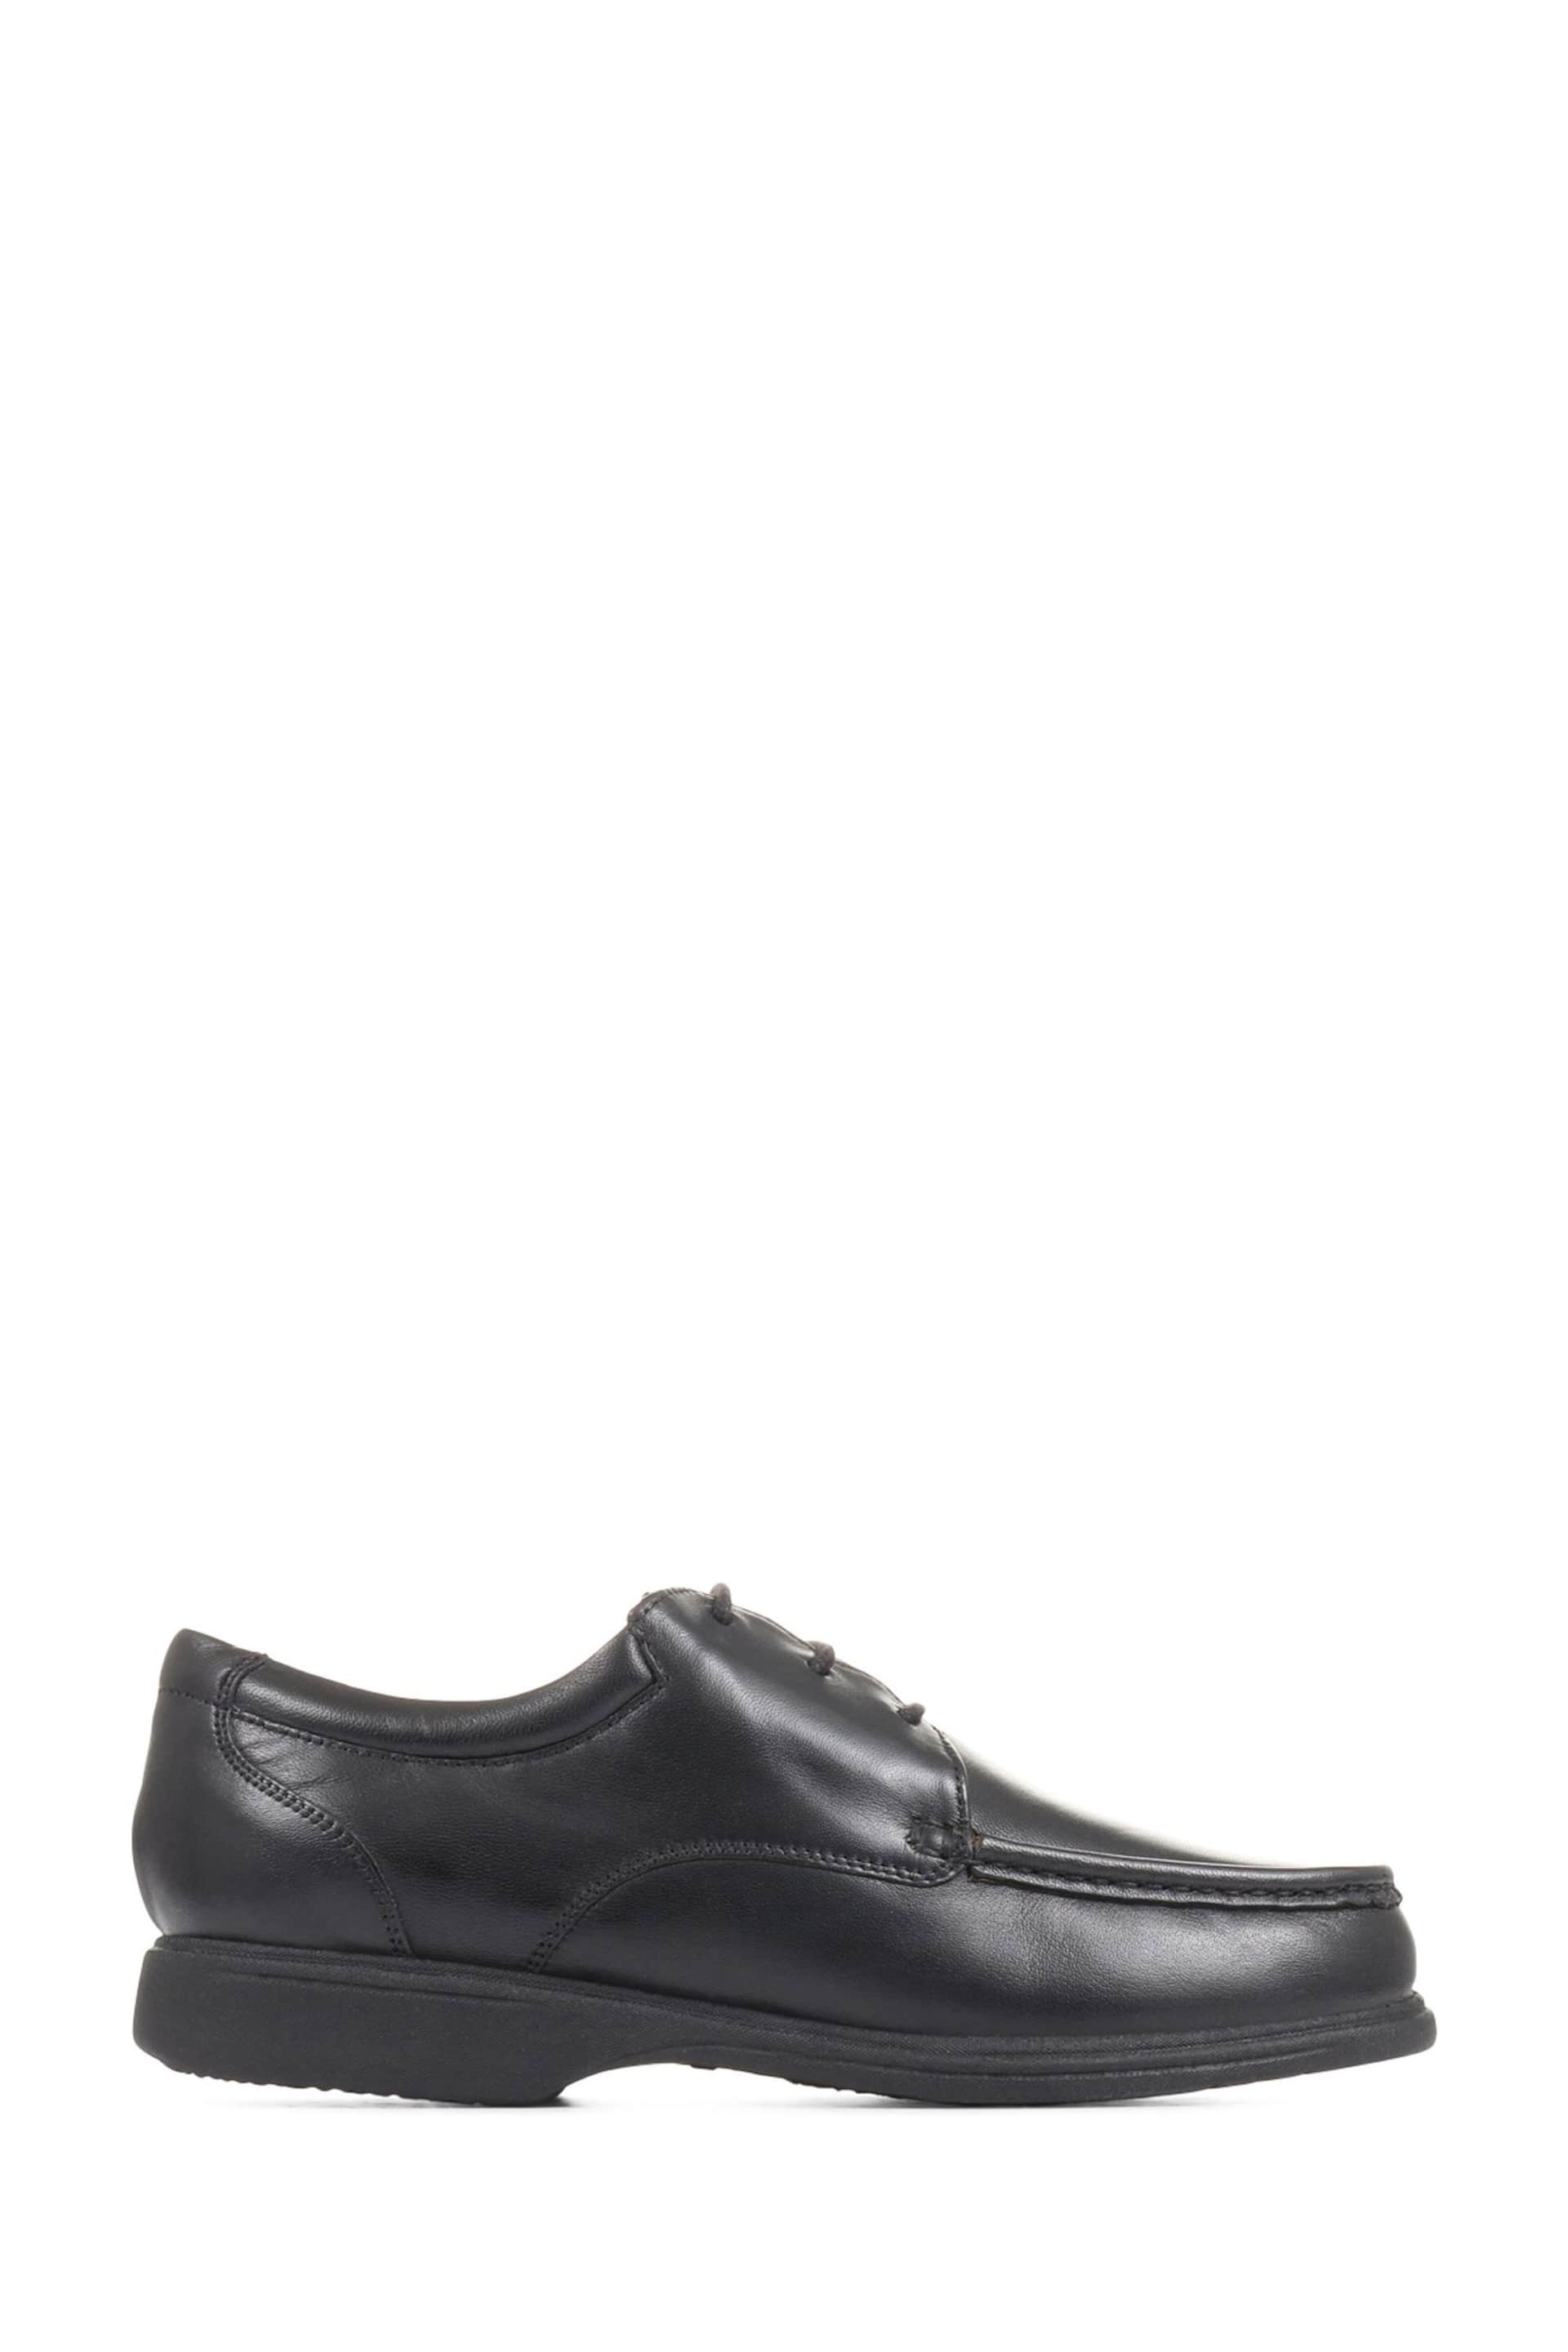 Pavers Gents Black Lace Smart Shoes - Image 1 of 5